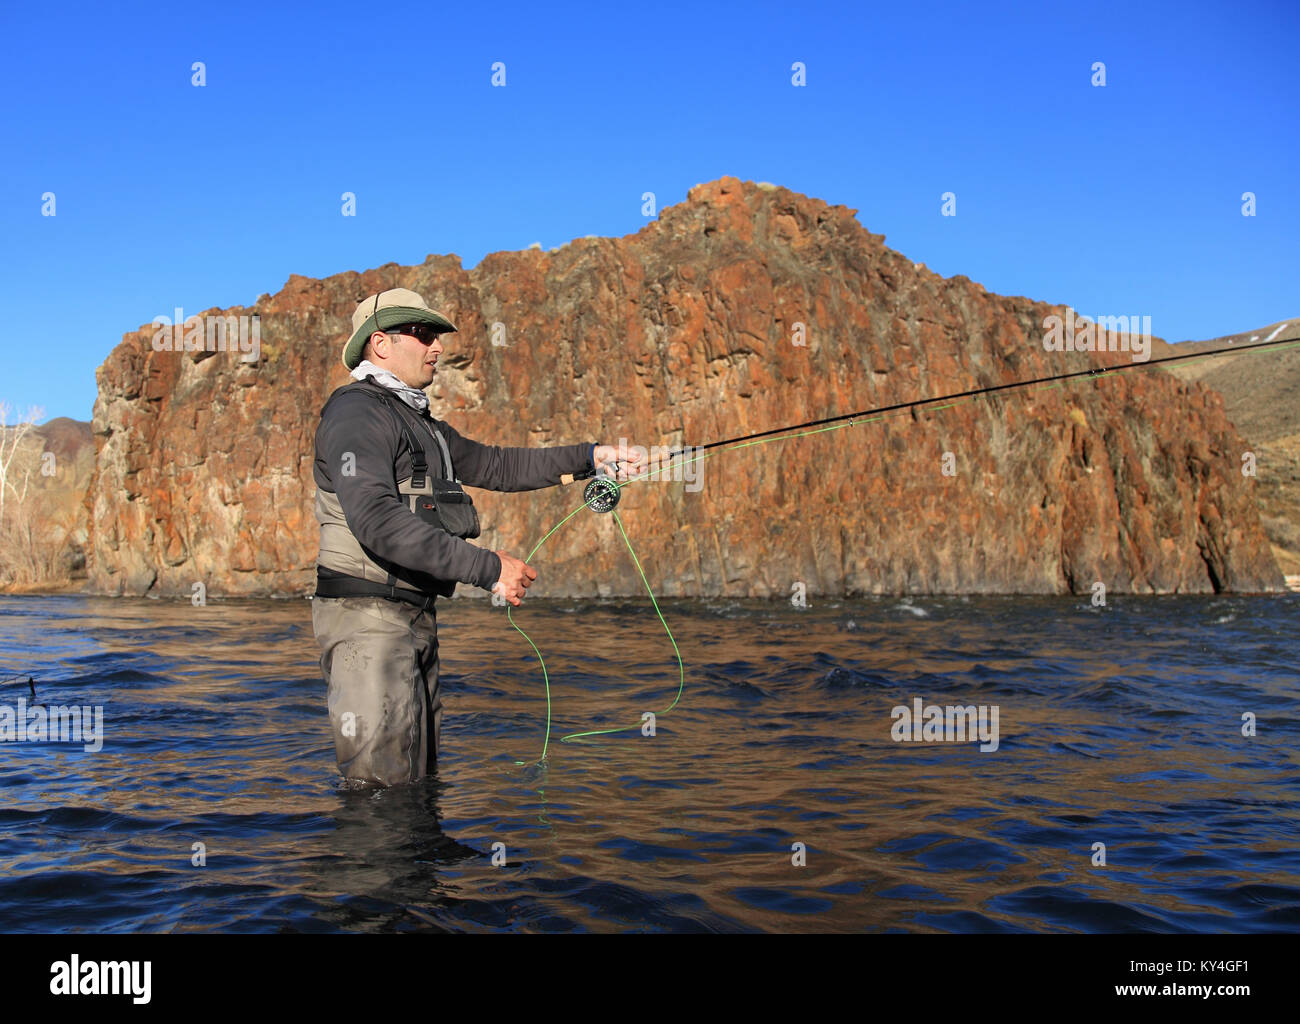 volent la tige de coulée de pêcheur sur la grande rivière avec fond rocailleux Banque D'Images